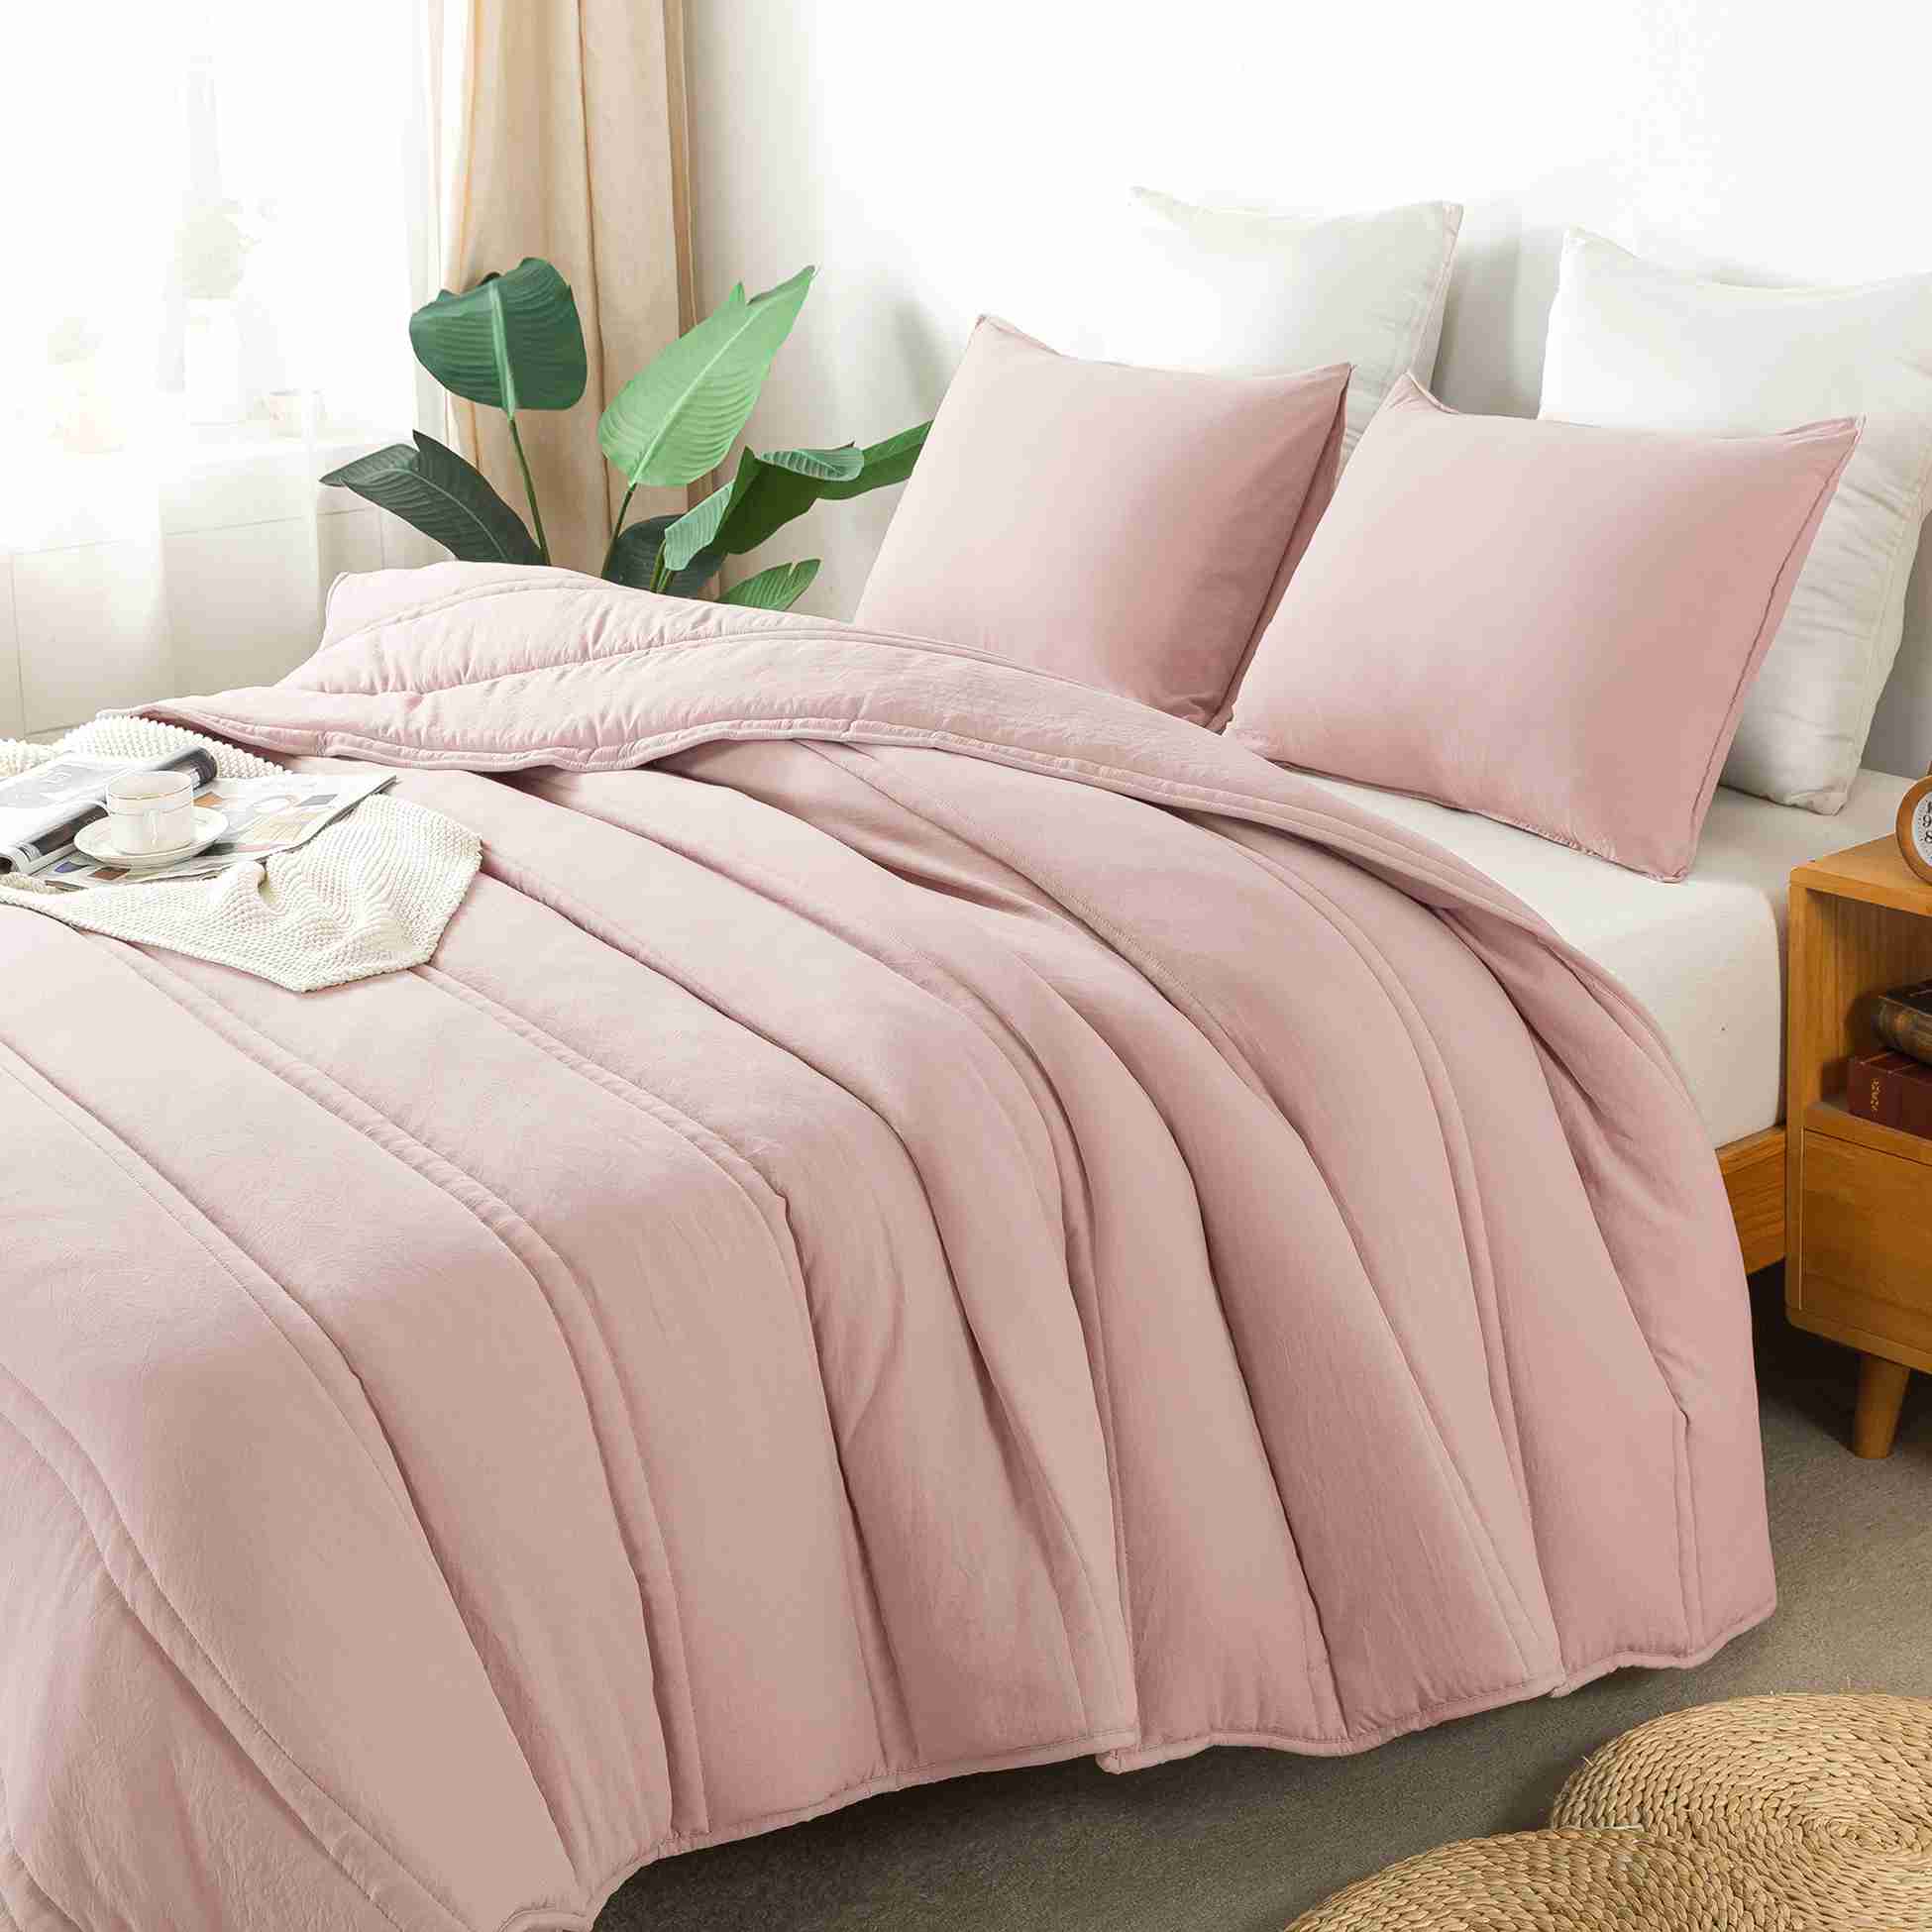 queen-size-comforter-set with discount code